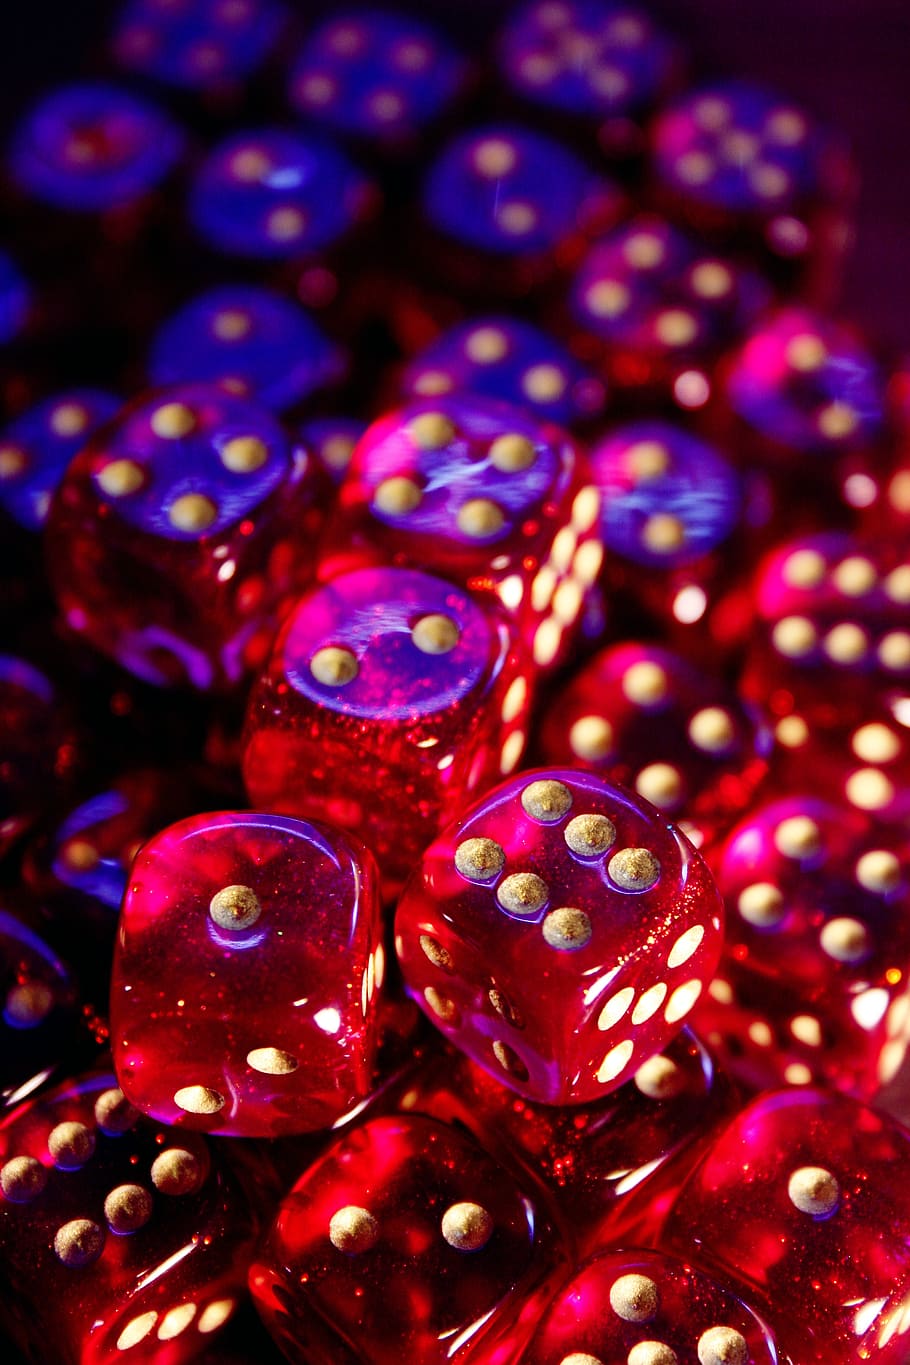 赤いサイコロのロット, キューブ, ロールプレイングゲーム, 支払い, 瞬間速度, 数値キューブ, ギャンブル, 運, 赤, ピンク